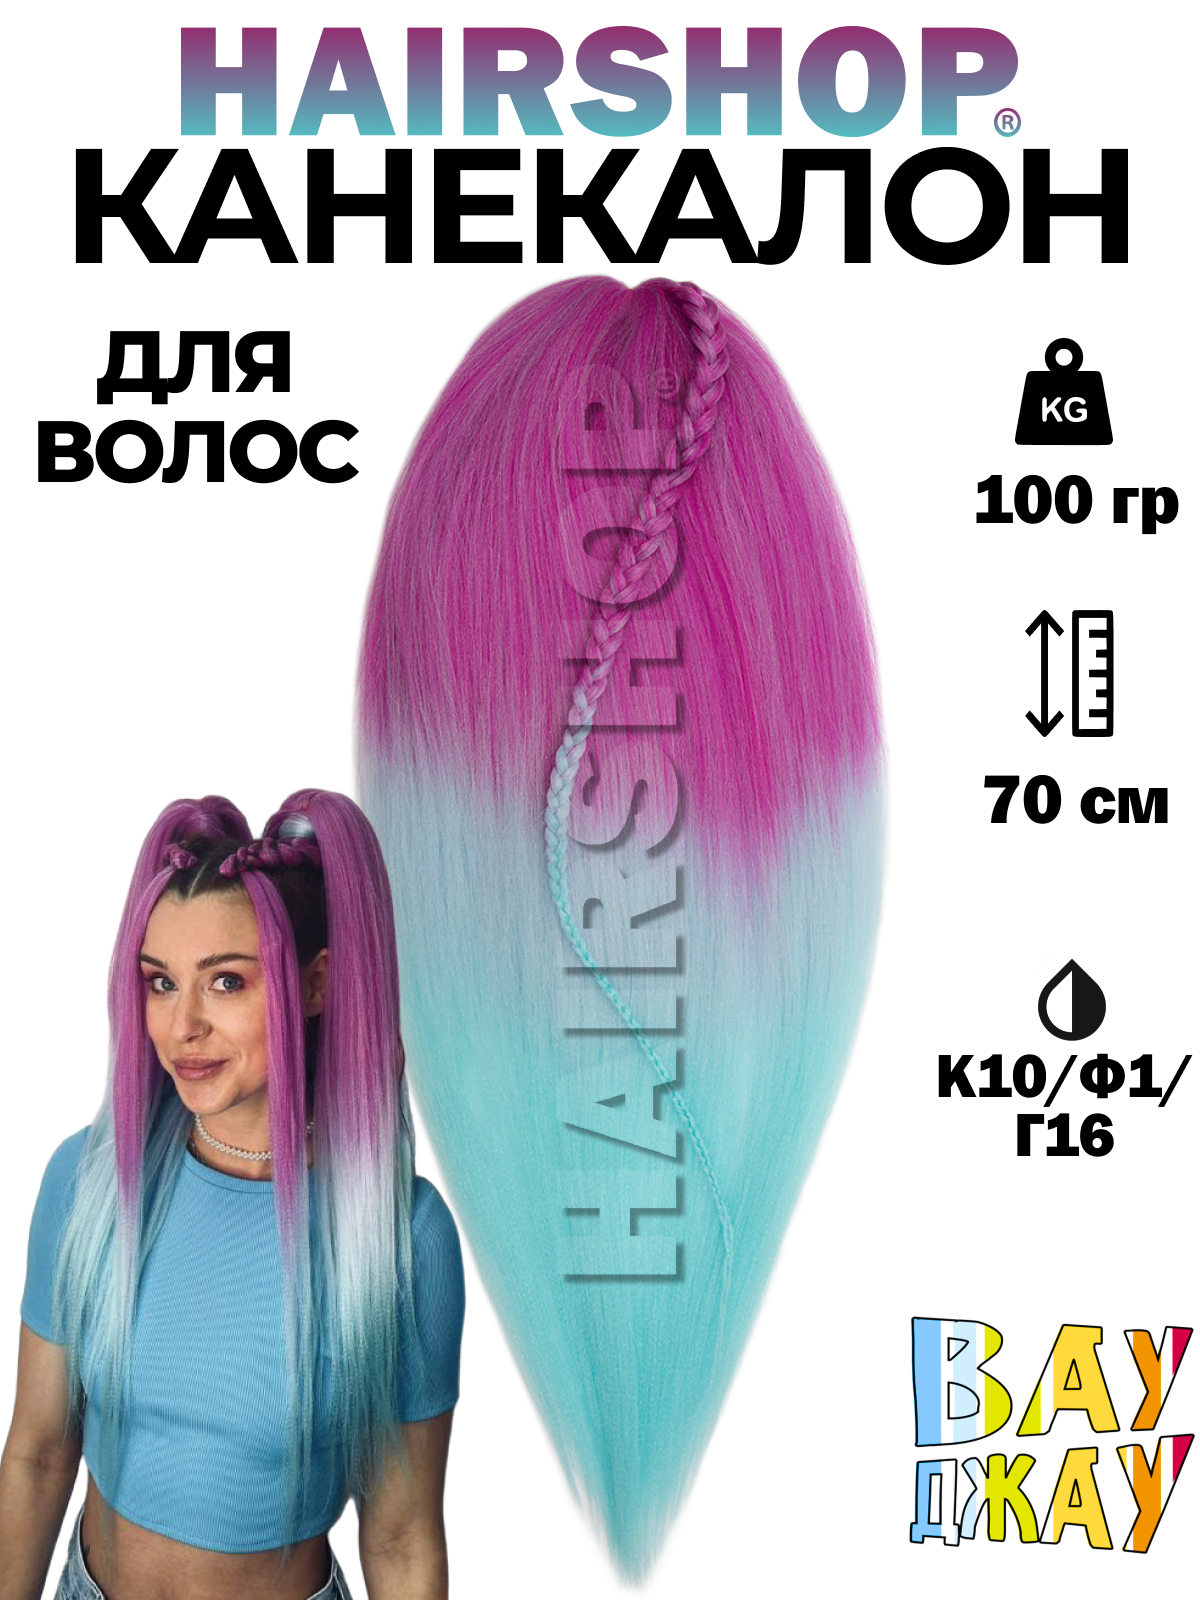 Канекалон HAIRSHOP Вау Джау К10-Ф1-Г16 1,3м 100г Розовый, Нежно-фиолетовый и голубой канекалон hairshop баскервиль люминесцентный г2 з12 пастельный голубой зеленый